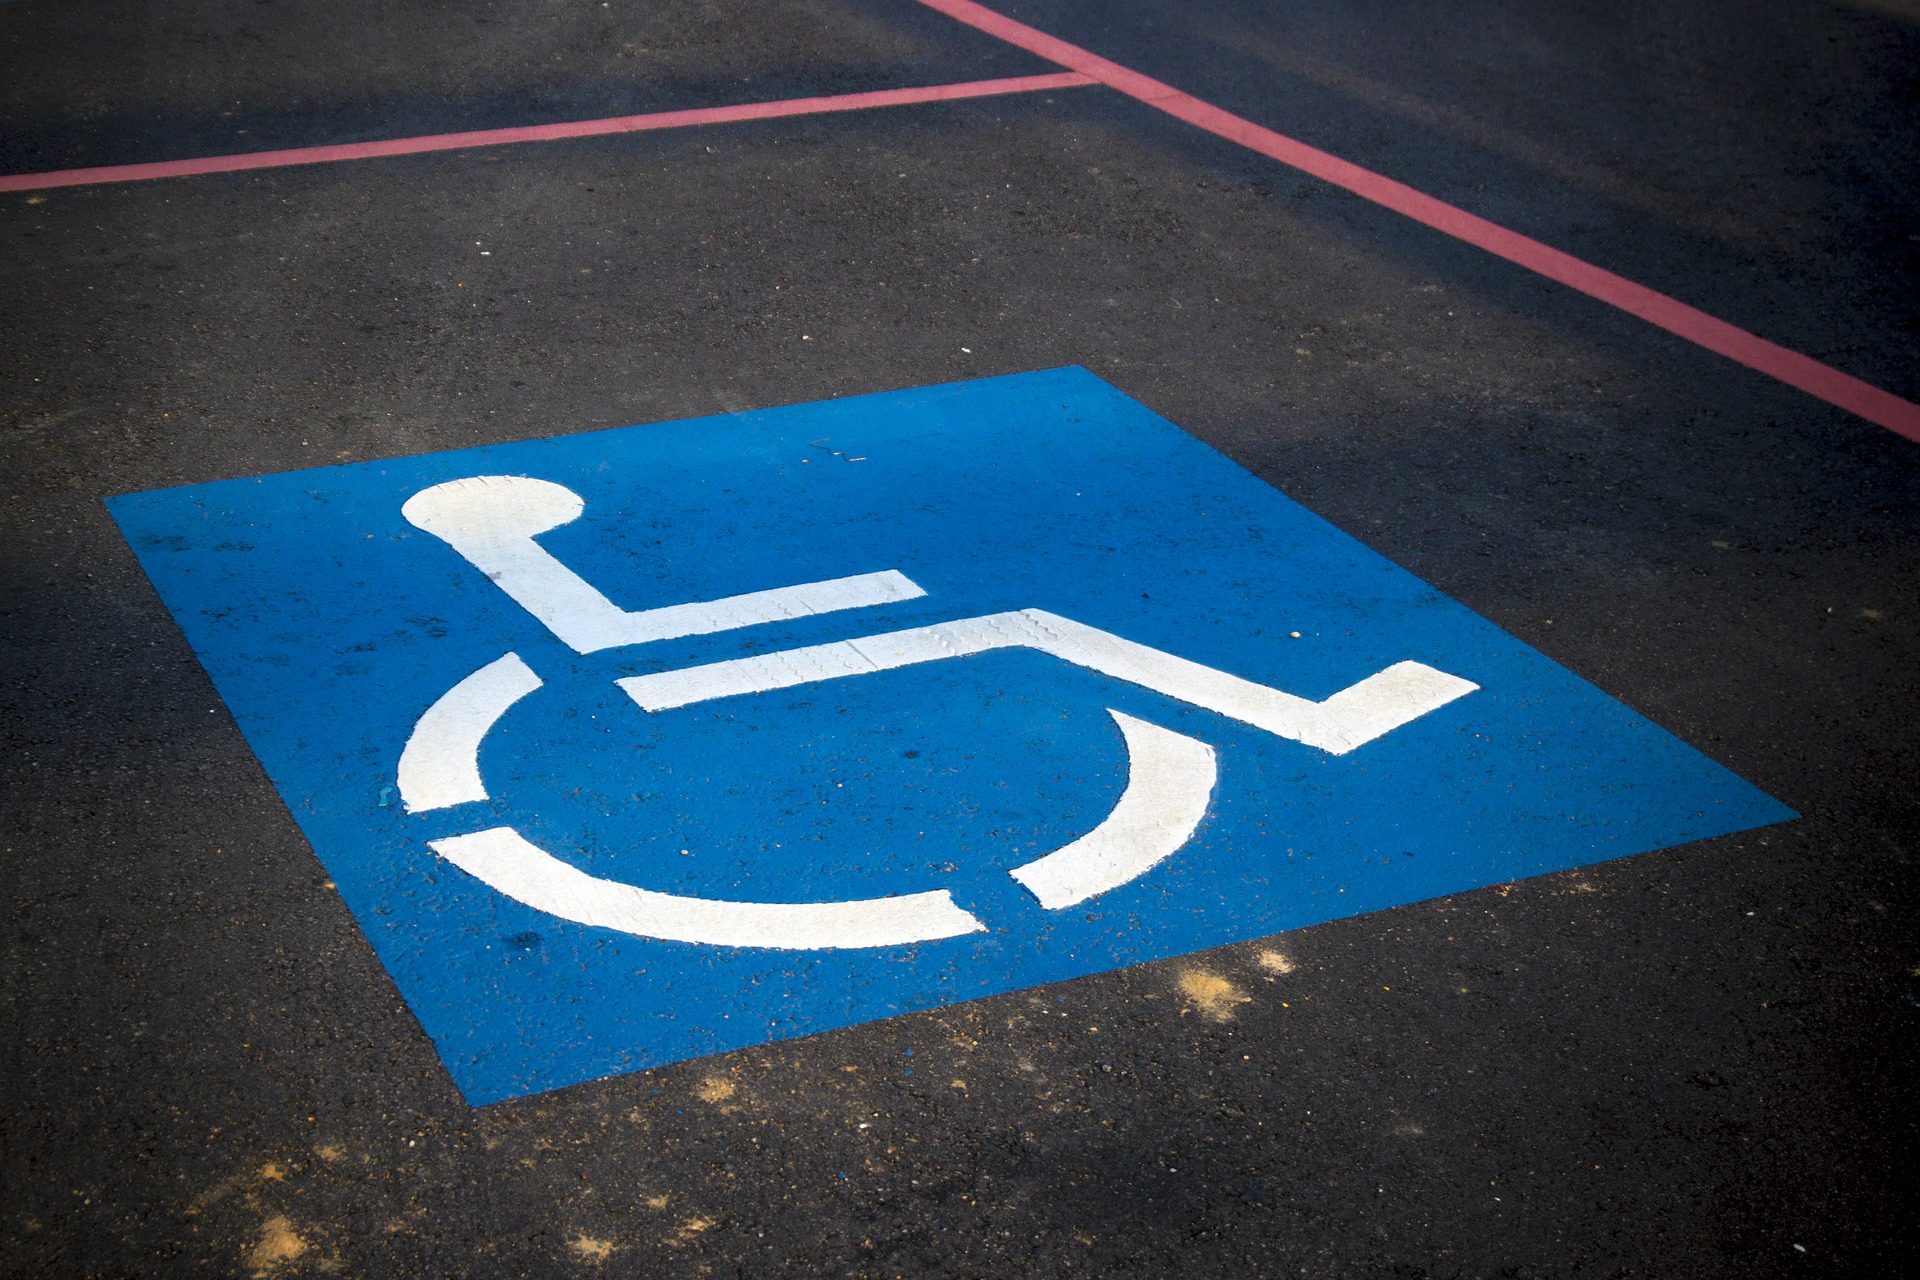 Drażniło go szukanie miejsca parkingowego, więc posługując się cudzą kartą zajmował miejsca dla niepełnosprawnych